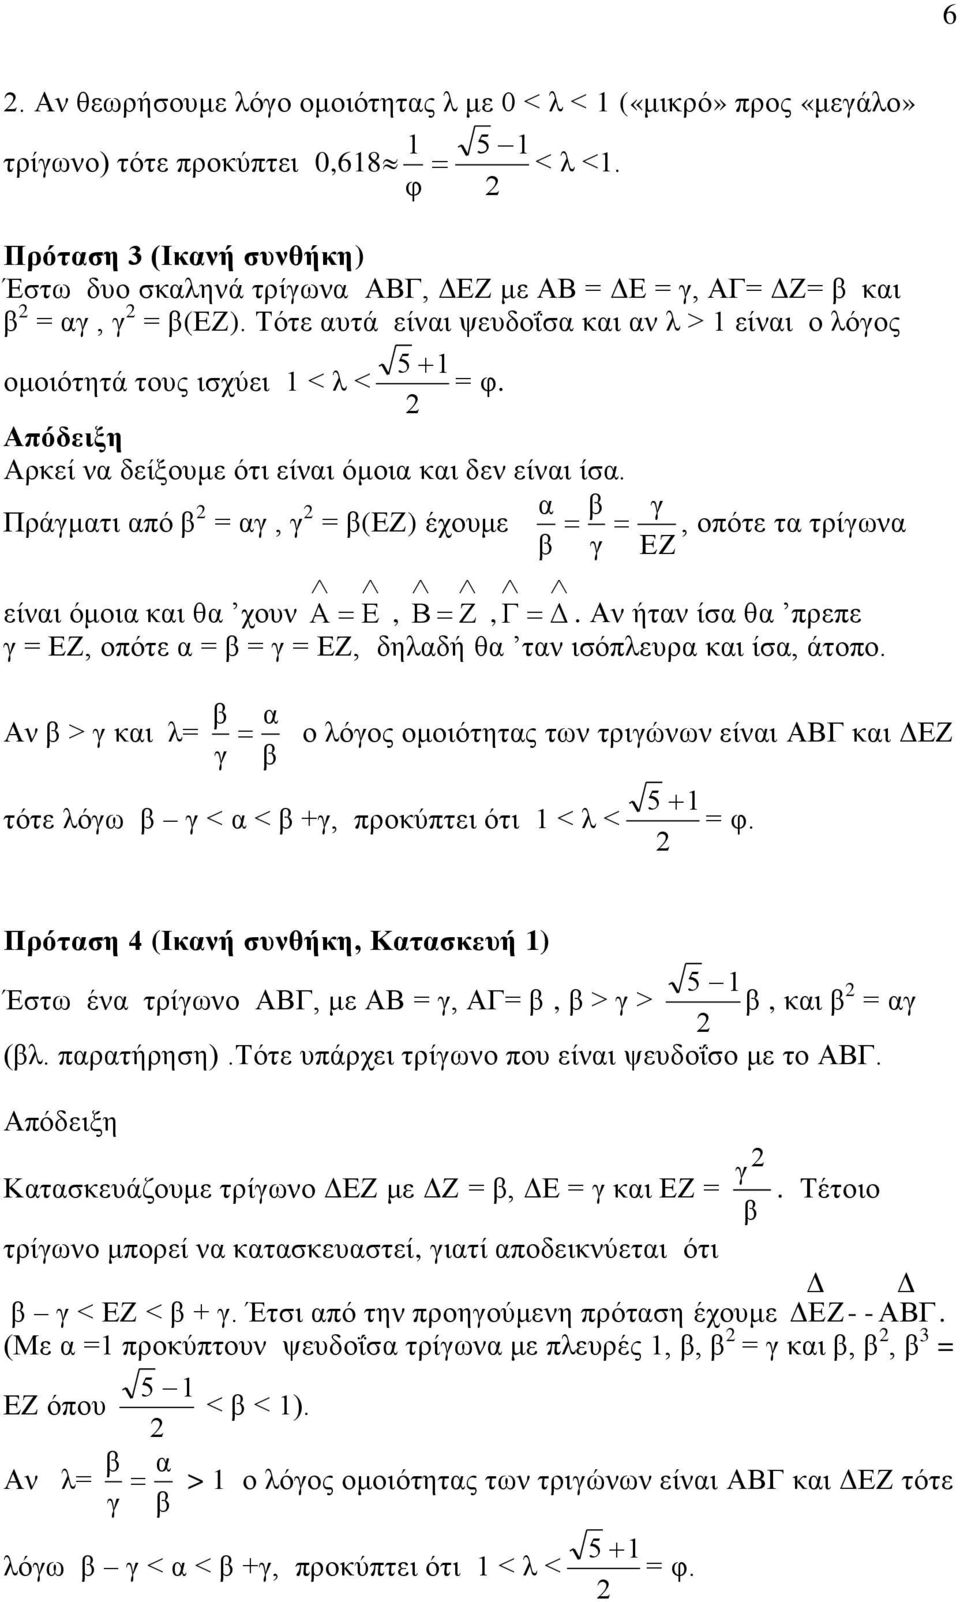 ήτ ίσ θ πρεπε = οπότε = = = δηλδή θ τ ισόπλευρ ι ίσ άτοπο. > ι λ= ο λόος ομοιότητς τω τριώω είι ι τότε λόω < < + προύπτει ότι 1 < λ < 5 1 = φ.